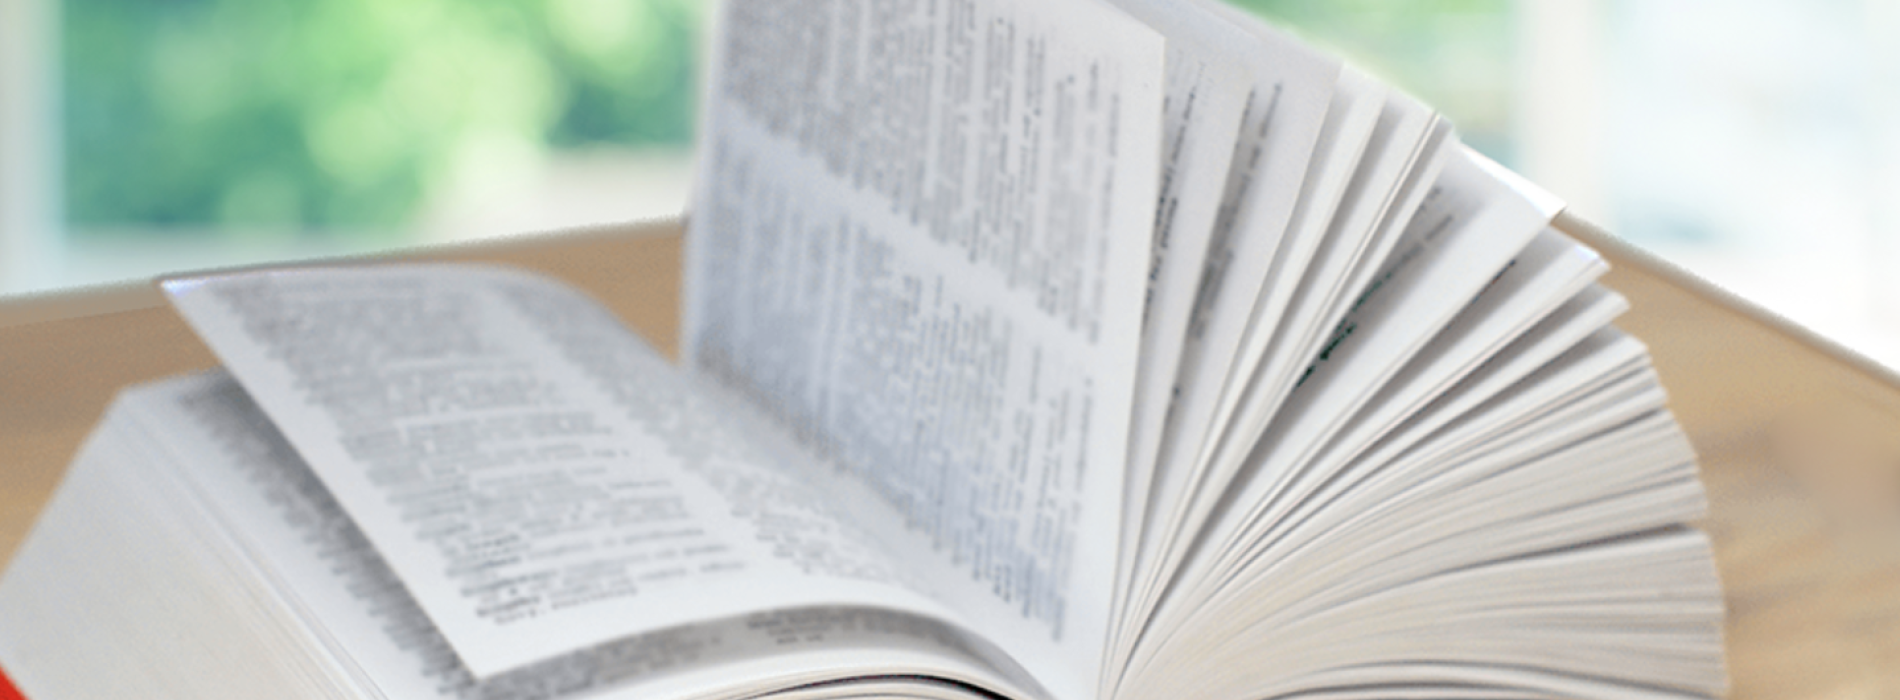 Acli Caserta, cento dizionari per la libreria “Il Dono” di Aversa